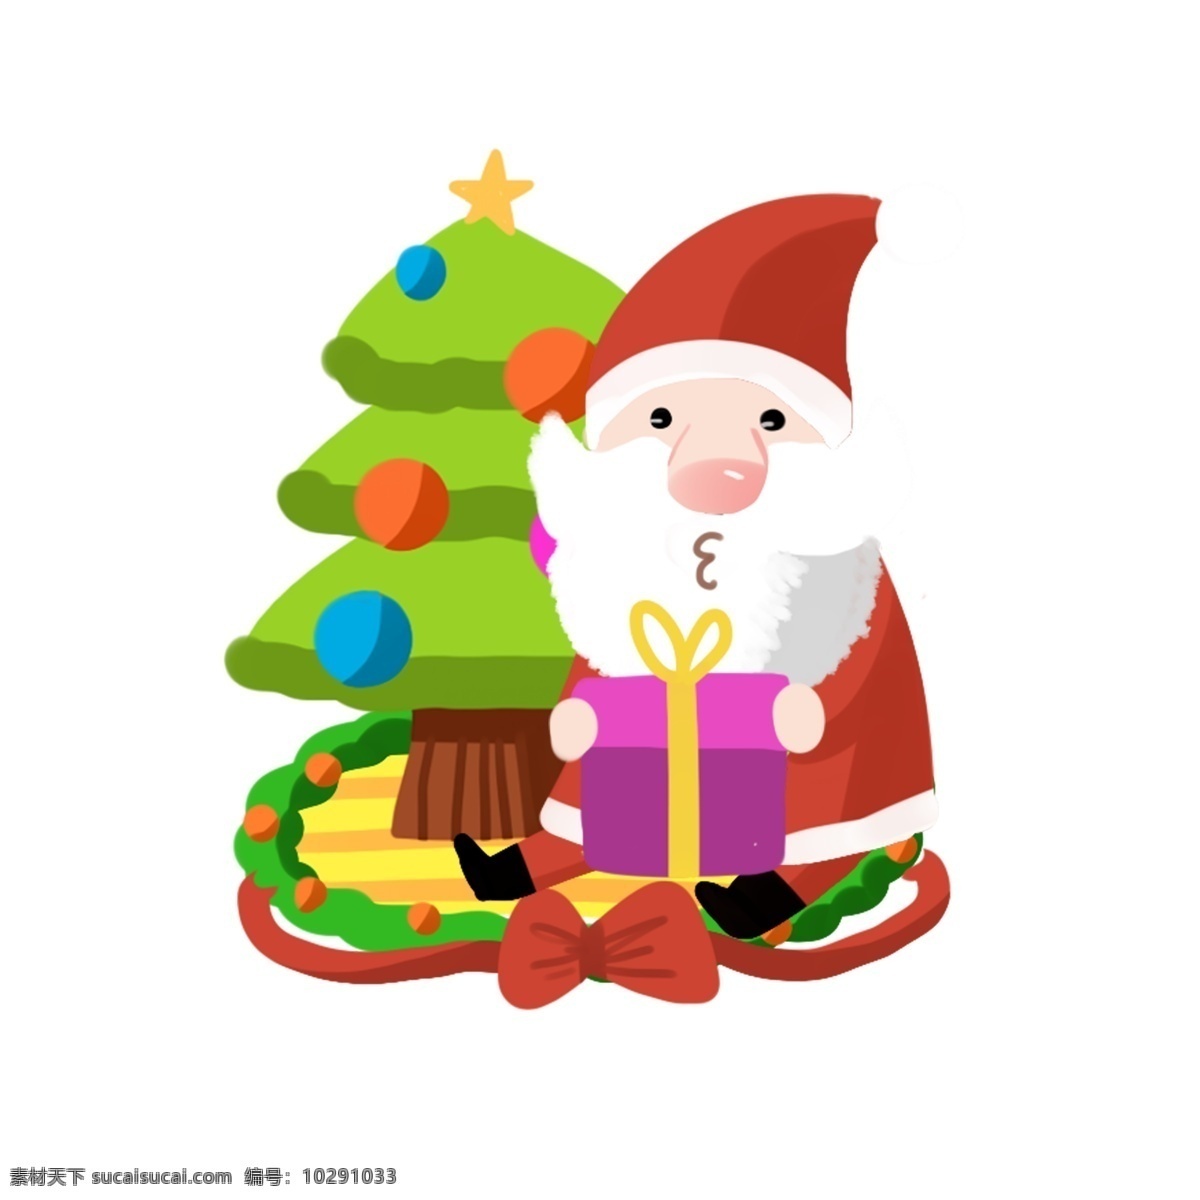 圣诞老人 送礼 手绘 卡通 人物 彩色 装饰 平面设计 原创 透明底 免抠 节日 海报装饰 清新 通用 圣诞节